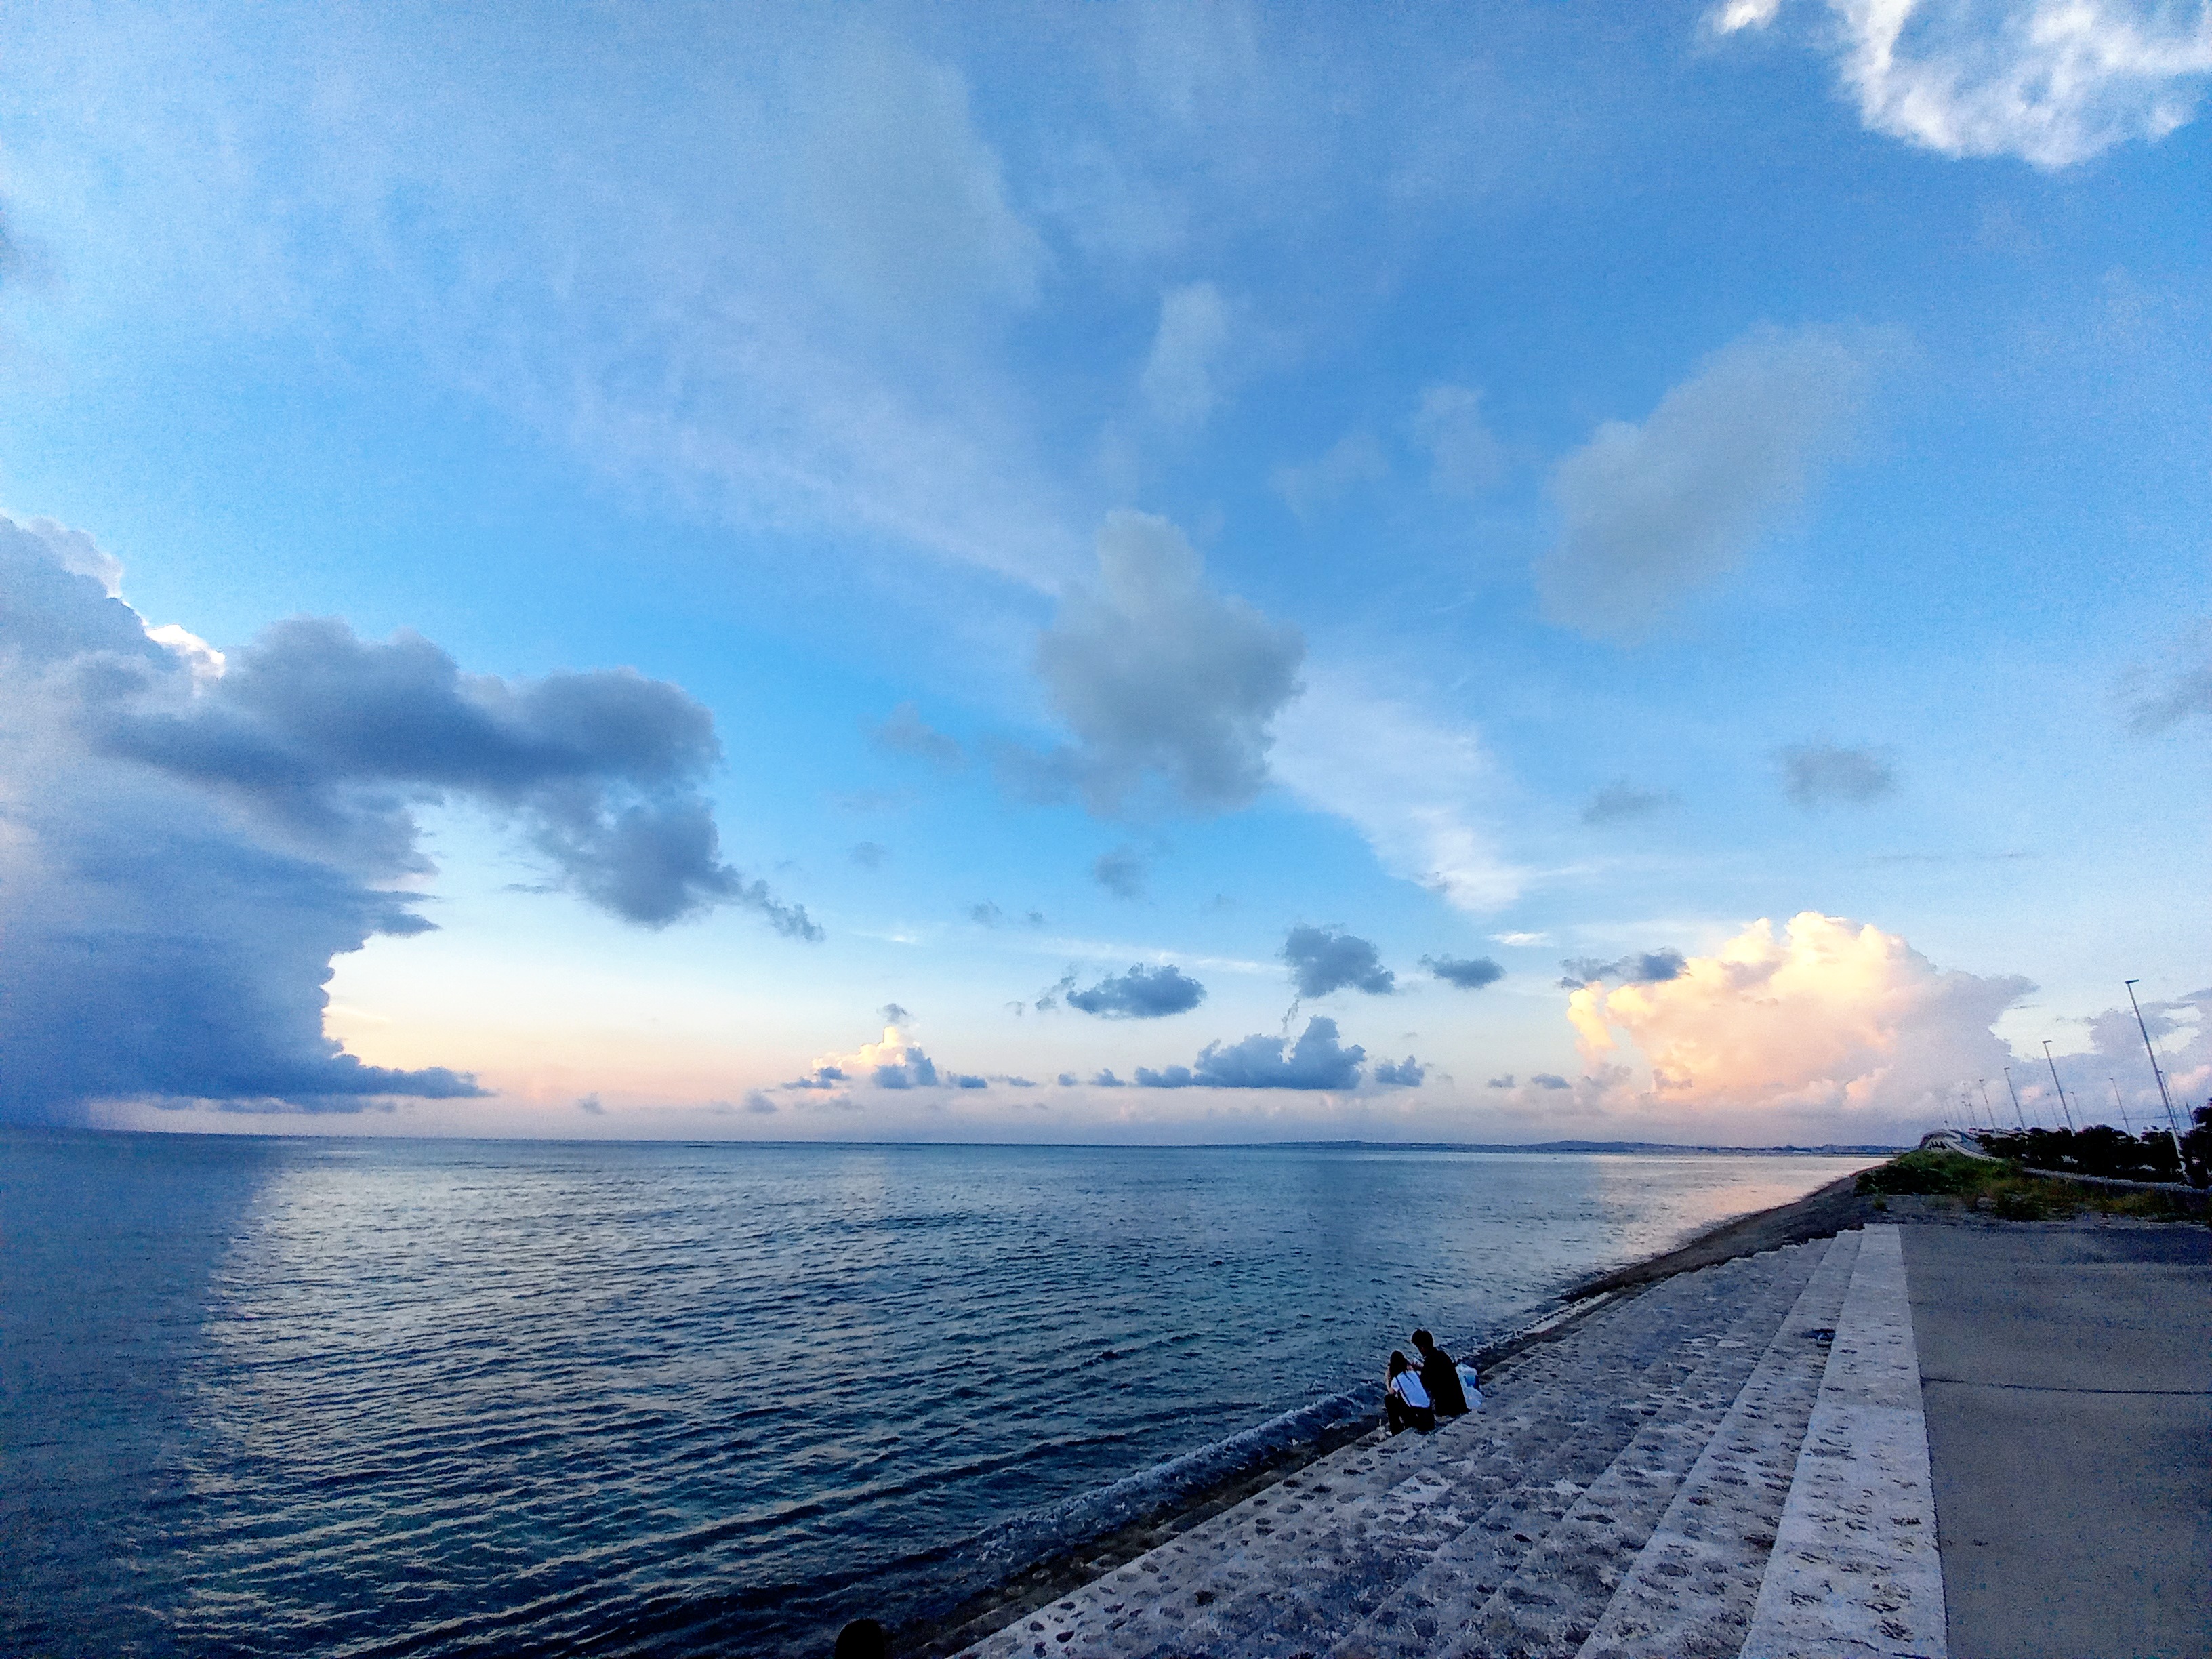 「てぃだ結の浜」から見る沖縄の夕暮れ空♪